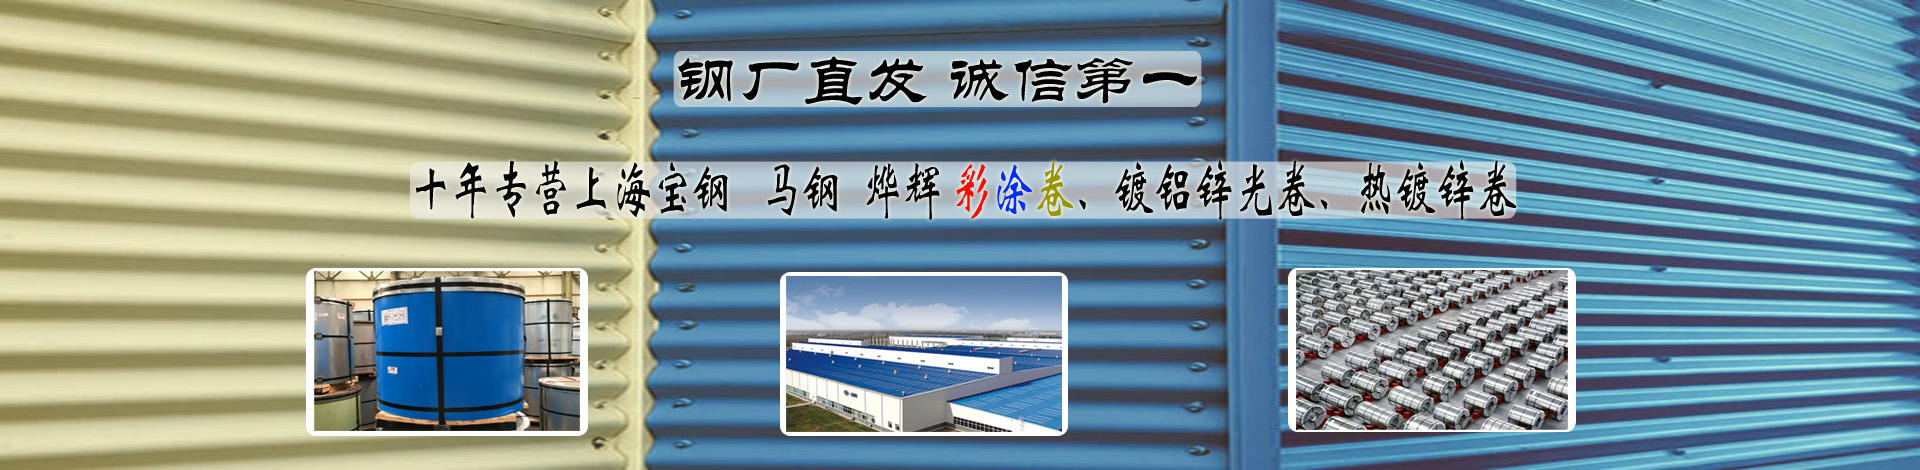 武汉宝钢彩钢板生产商 上海宝钢彩钢板